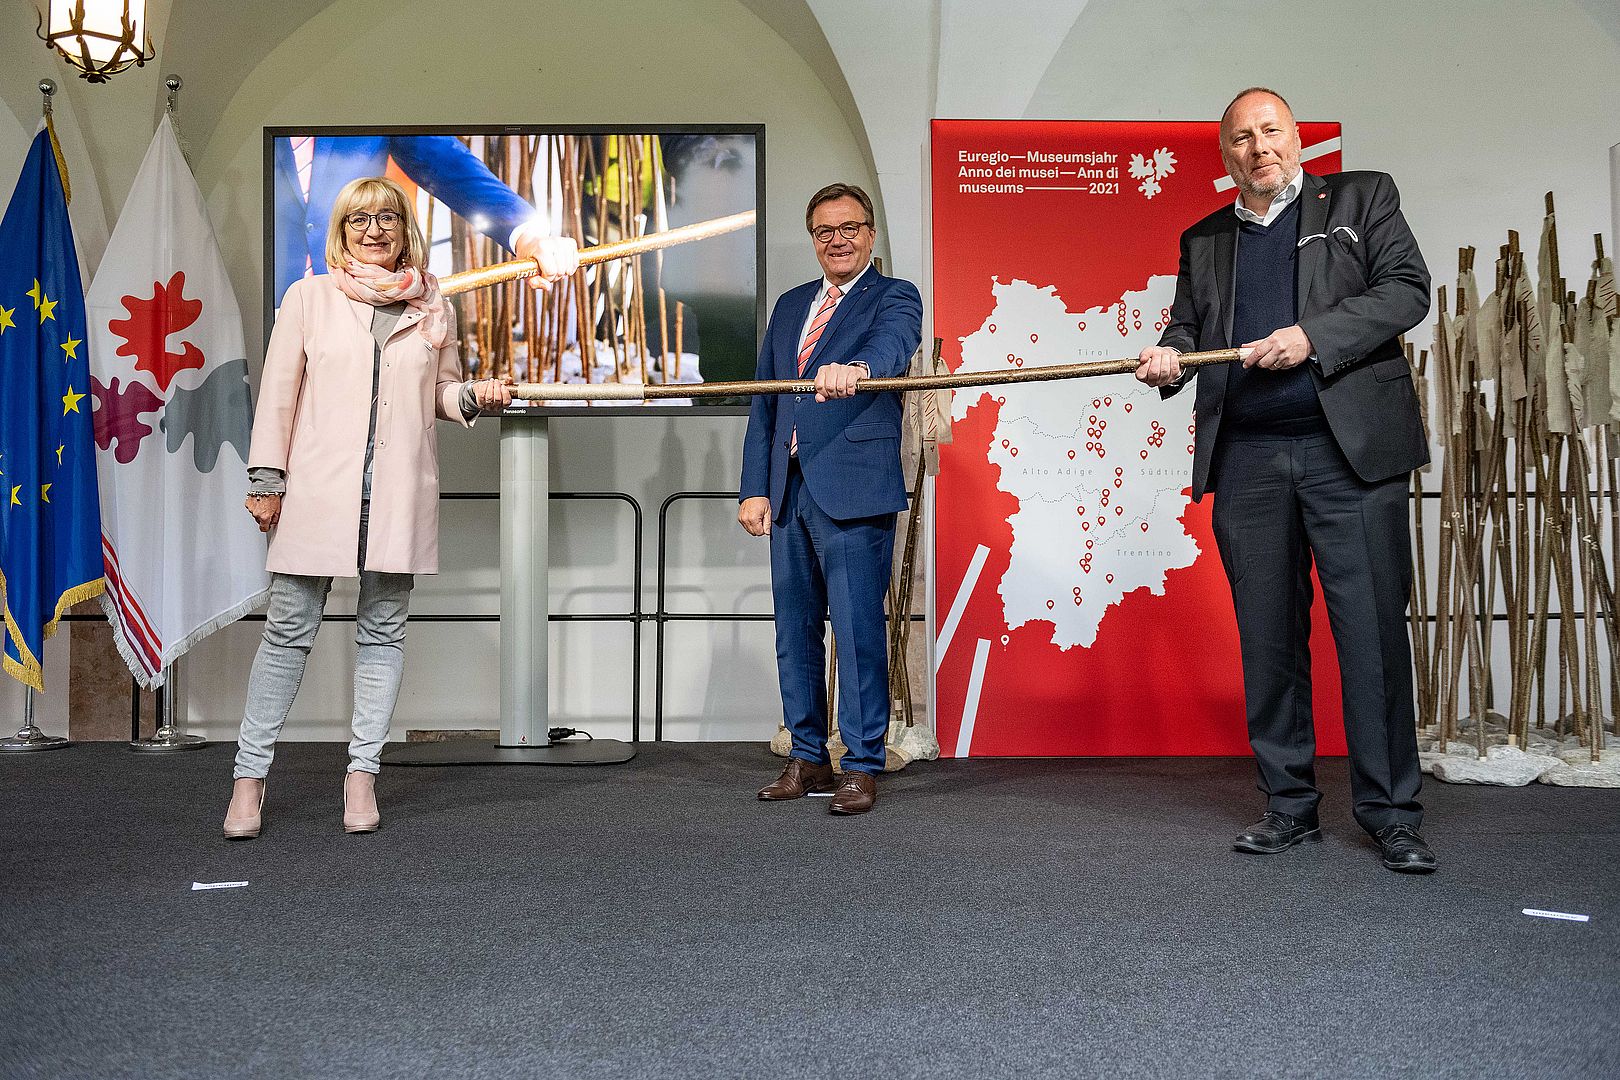 Palfrader, Platter e Assmann inaugurano l'anno dei musei Euregio 2021